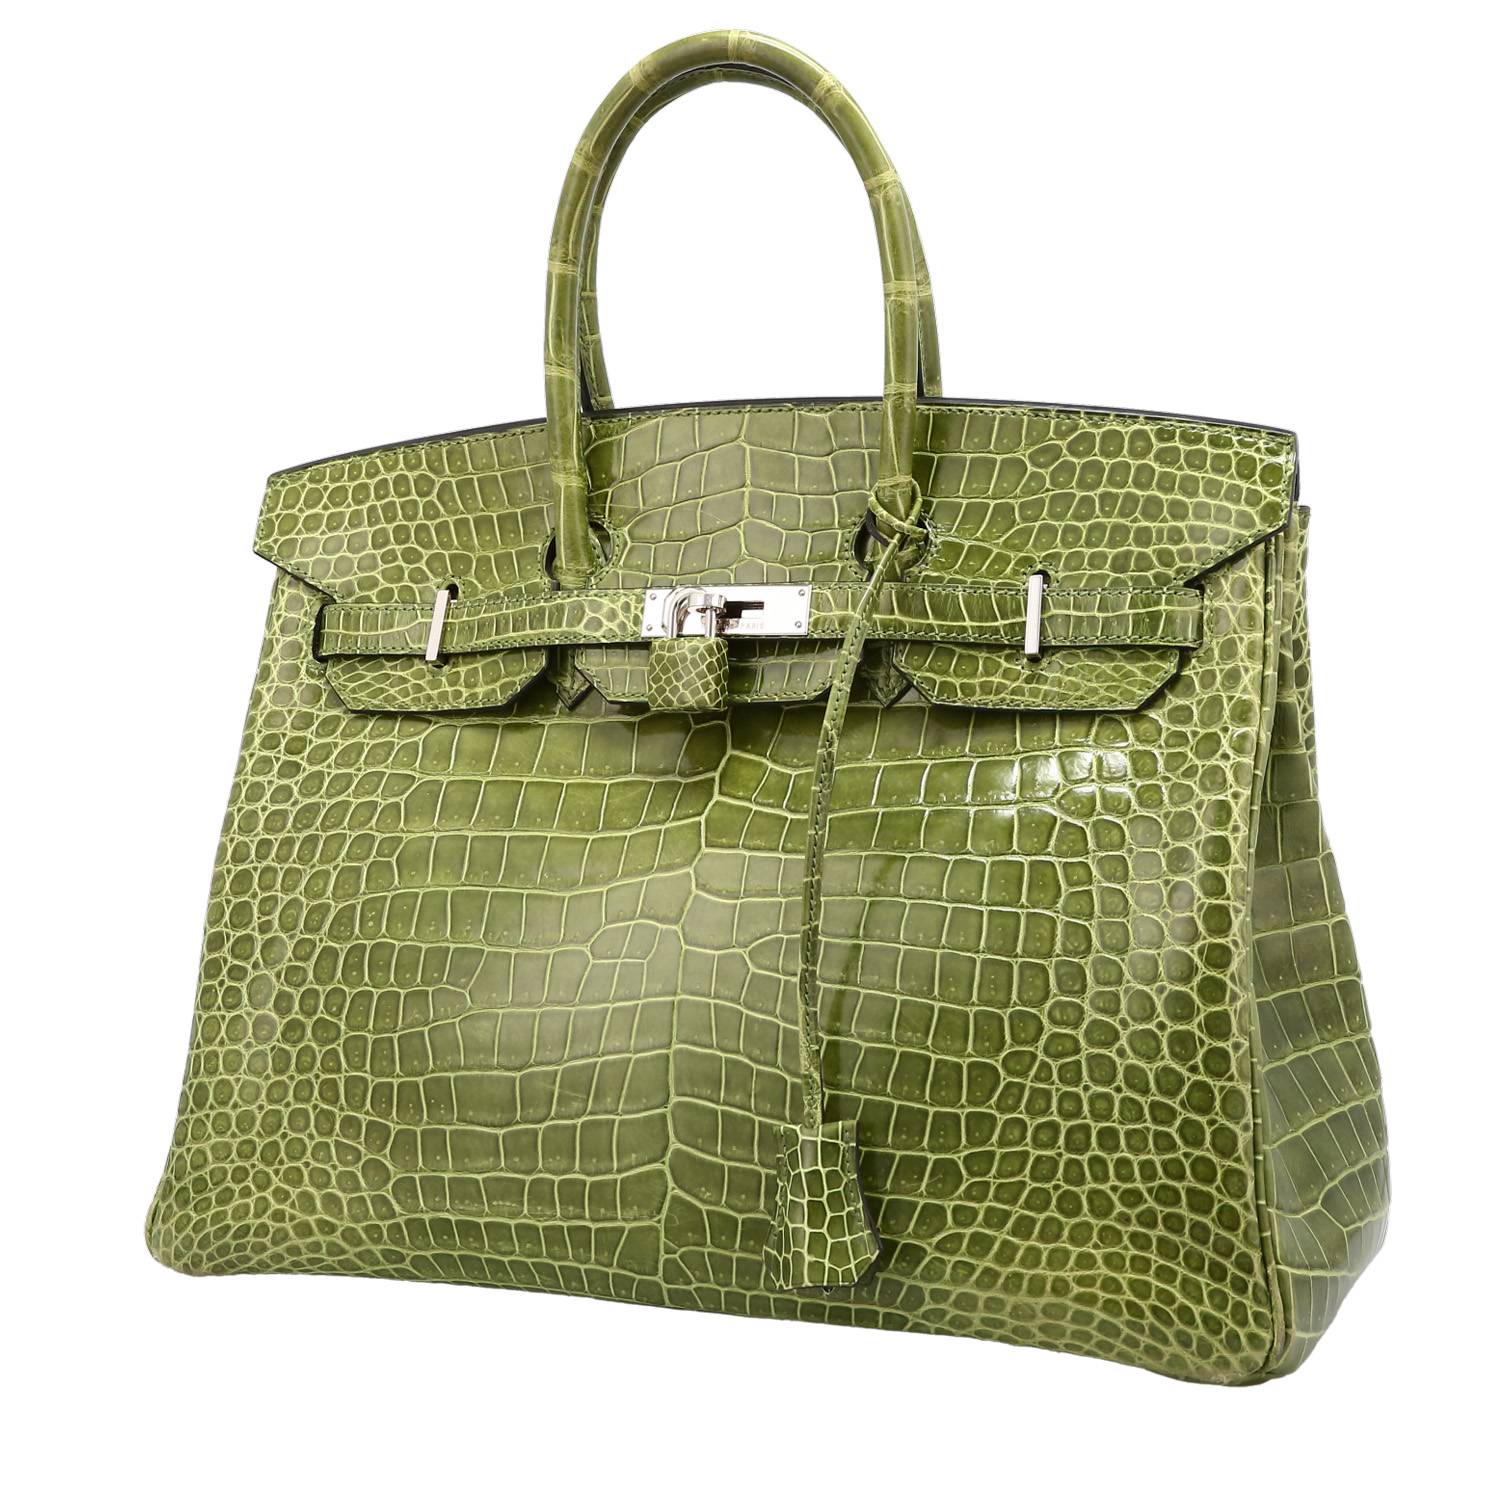 Hermes Birkin bag 30 Anis green Togo leather Gold hardware